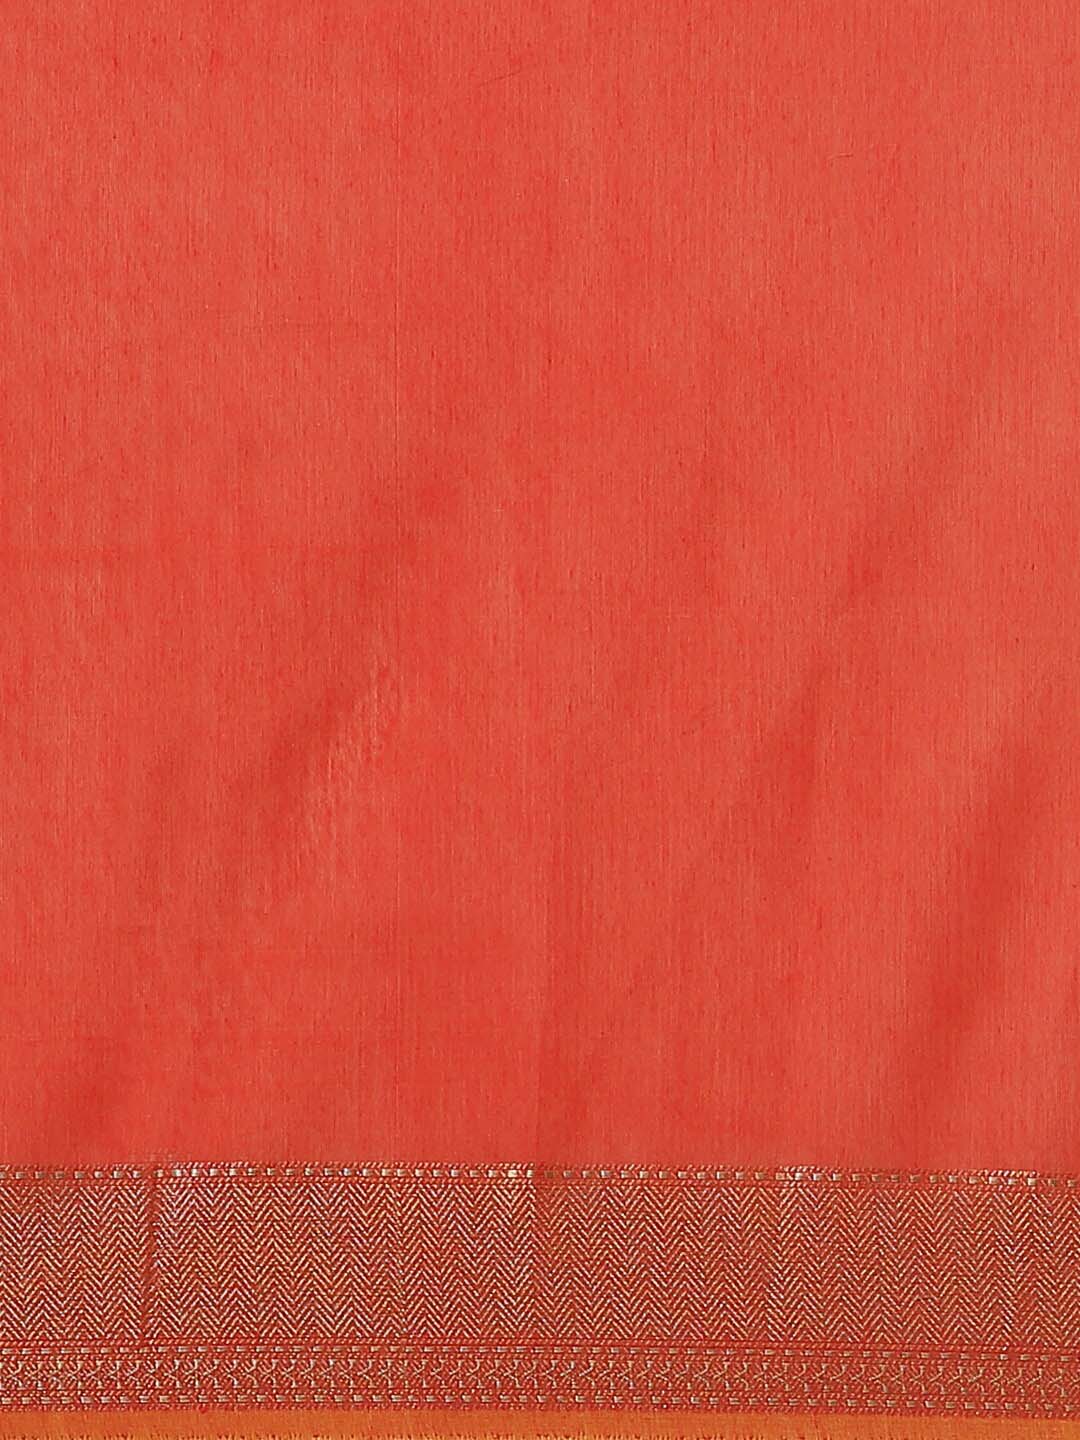 Indethnic Banarasi Rust Woven Design Daily Wear Saree - Saree Detail View